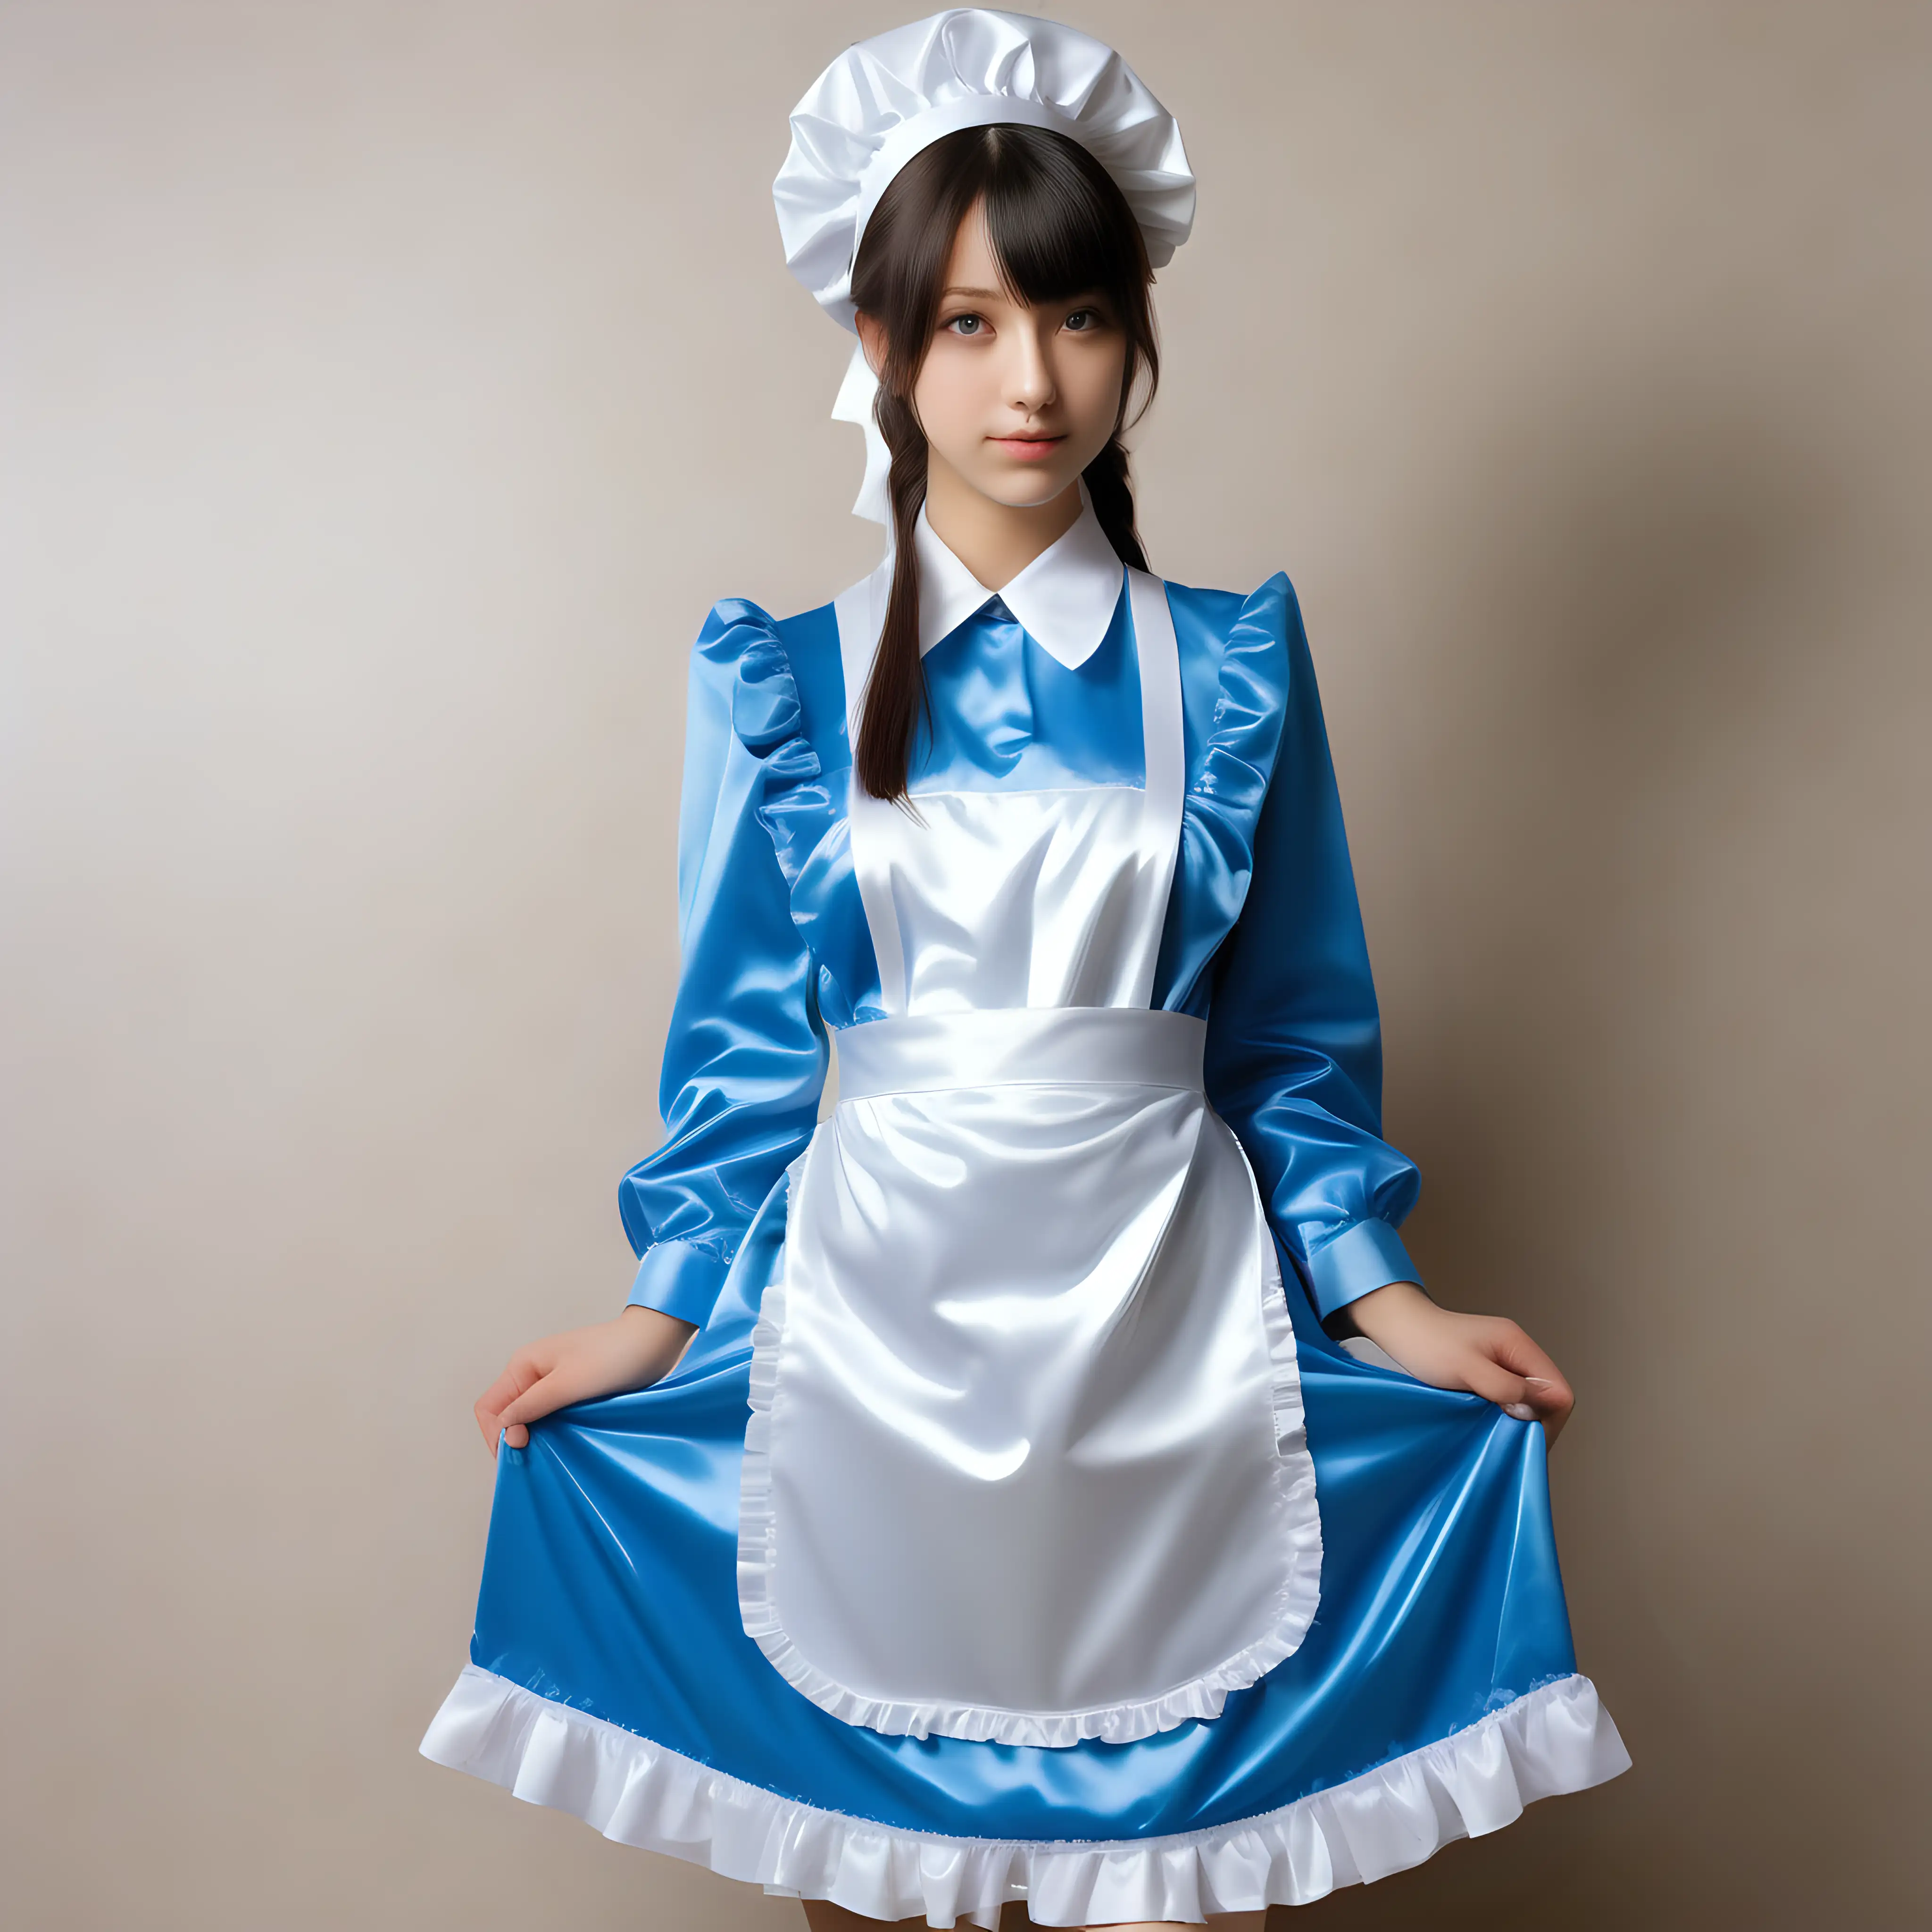 Elegant Maid Uniform Fashion Stylish Girl in Satin